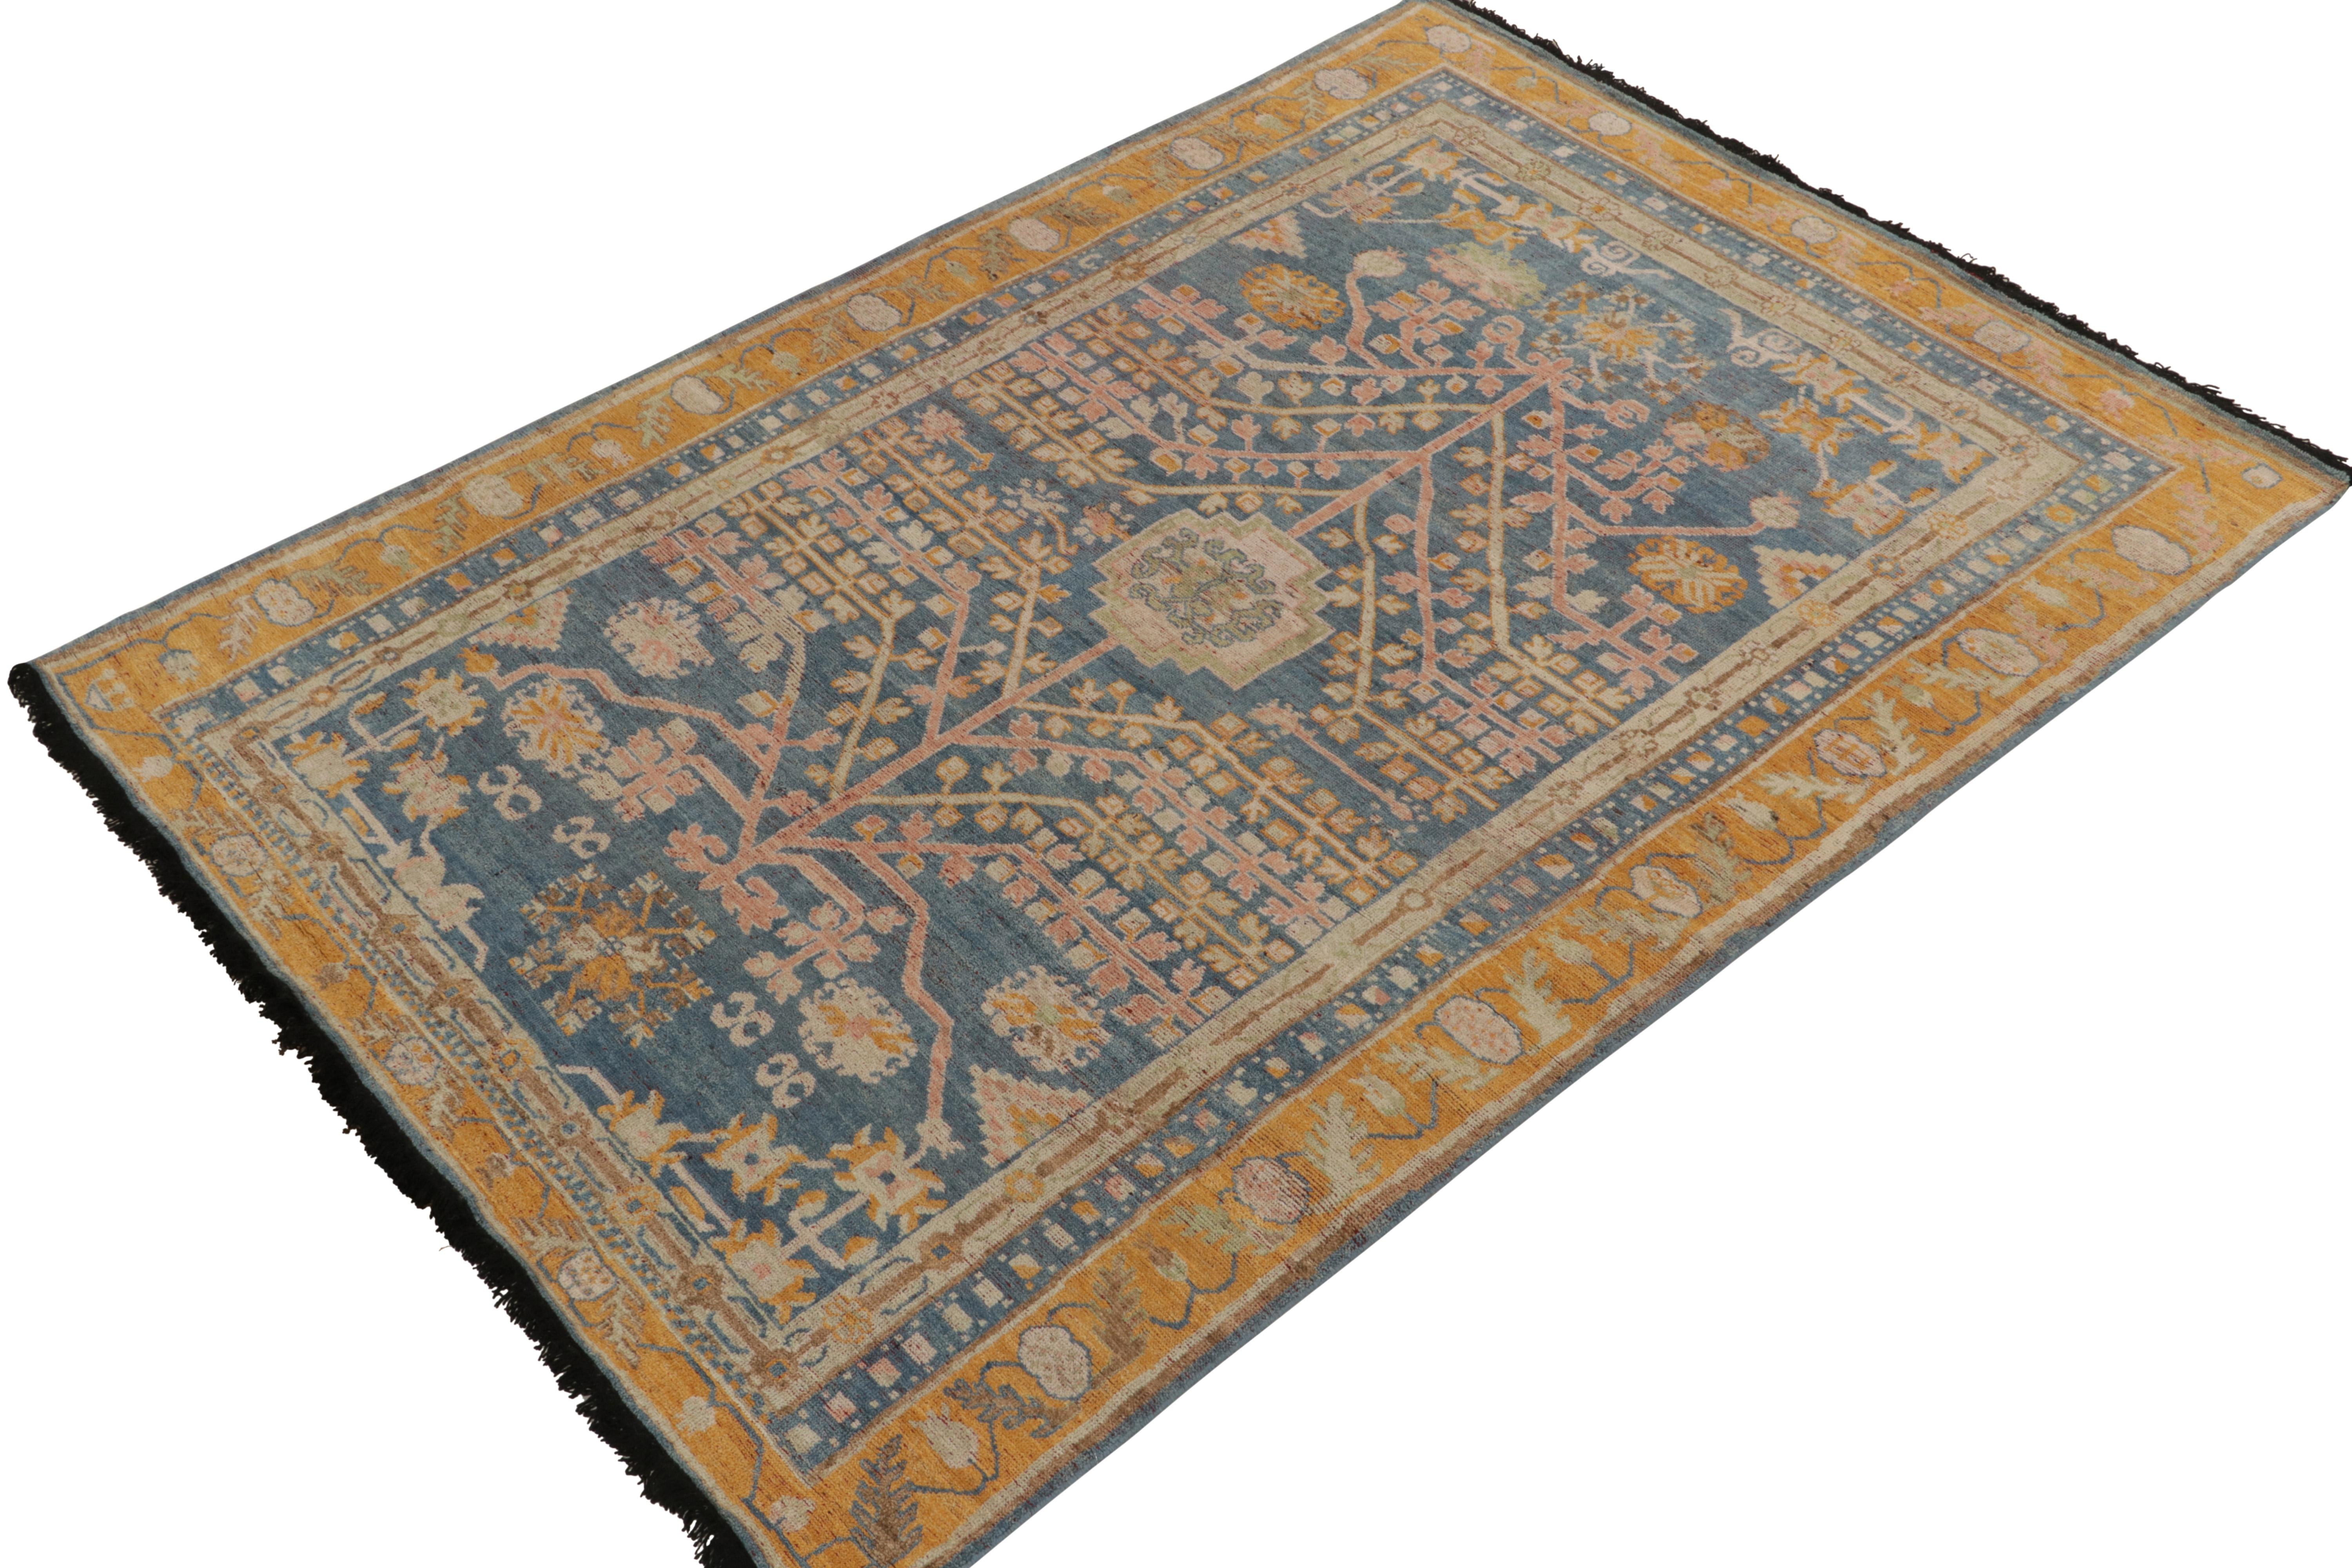 Noué à la main dans la laine la plus douce, ce tapis 6x9 de notre collection Burano est particulièrement inspiré des tapis anciens Khotan-Samarkand. 

Une échelle polyvalente jouit de motifs géométriques-floraux en bleu, or et rose, allusions aux